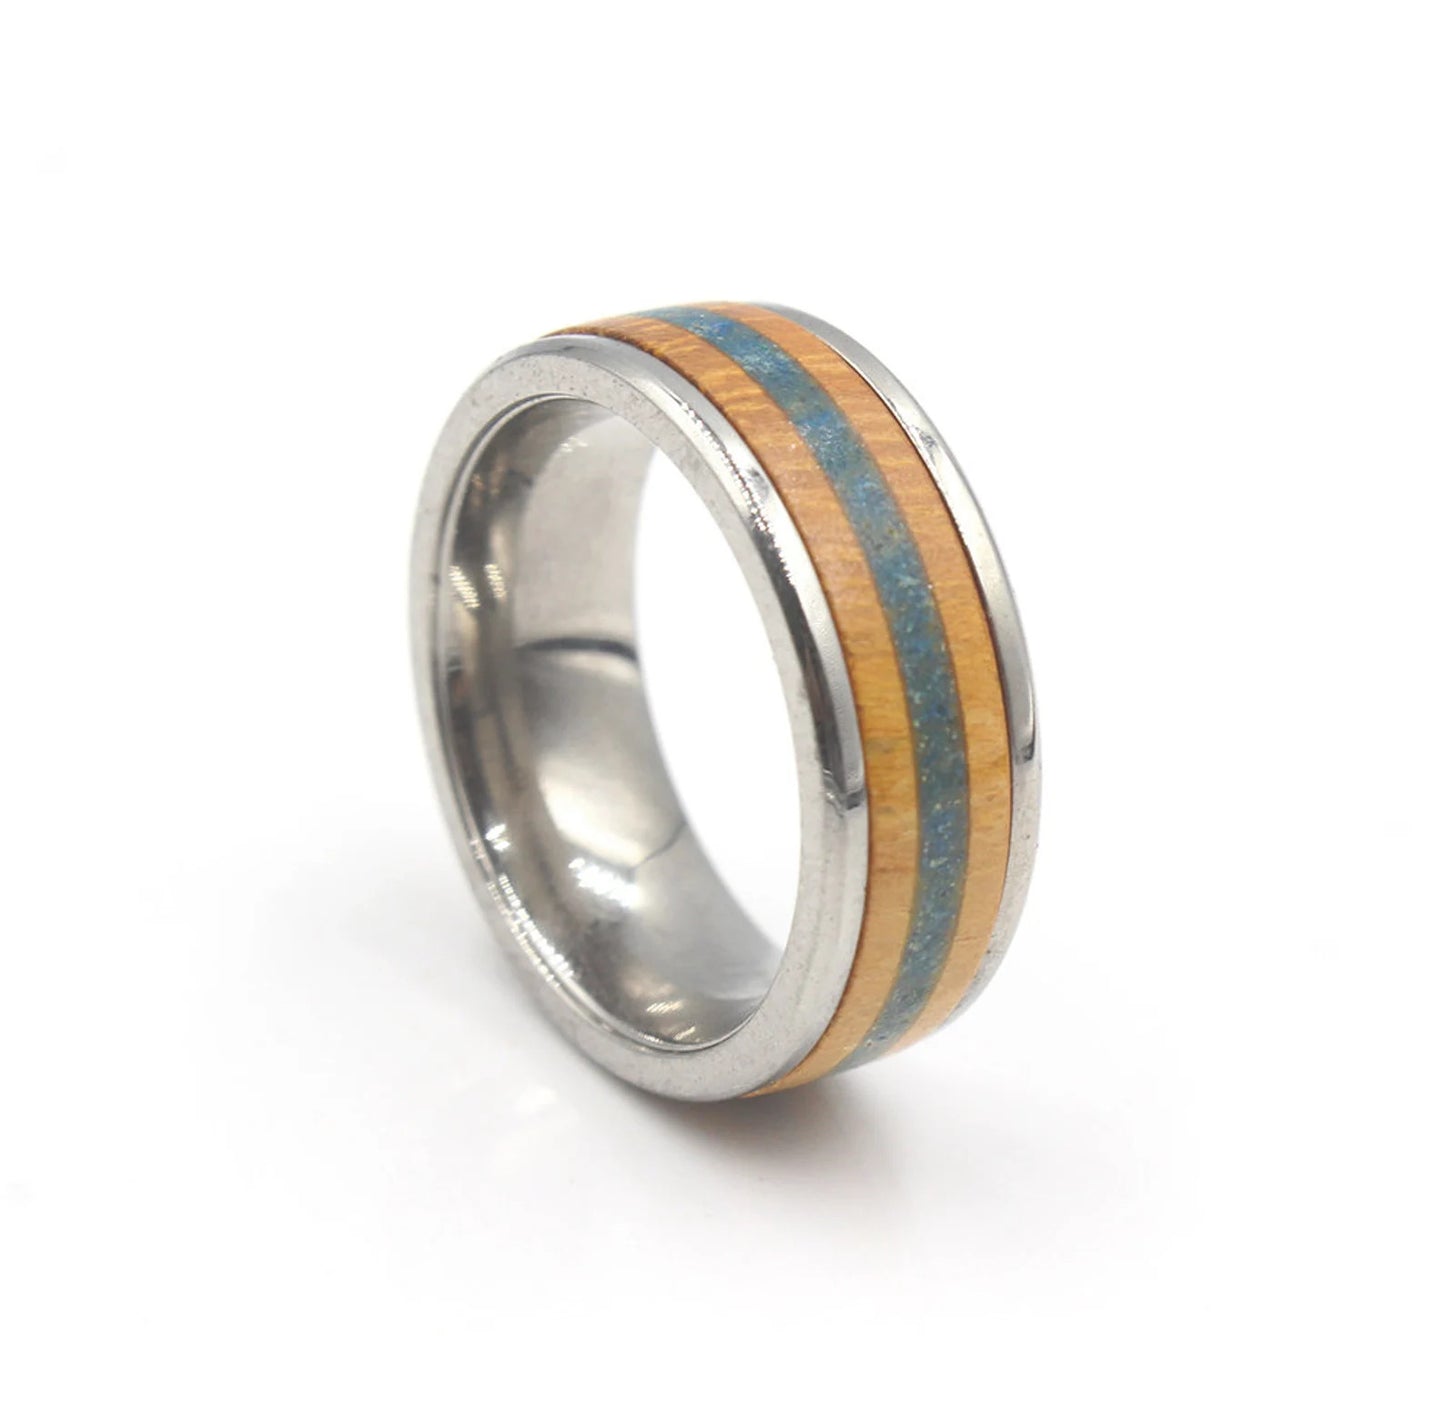 Jackfruit Wood and Lapis Lazuli Inlay Ring